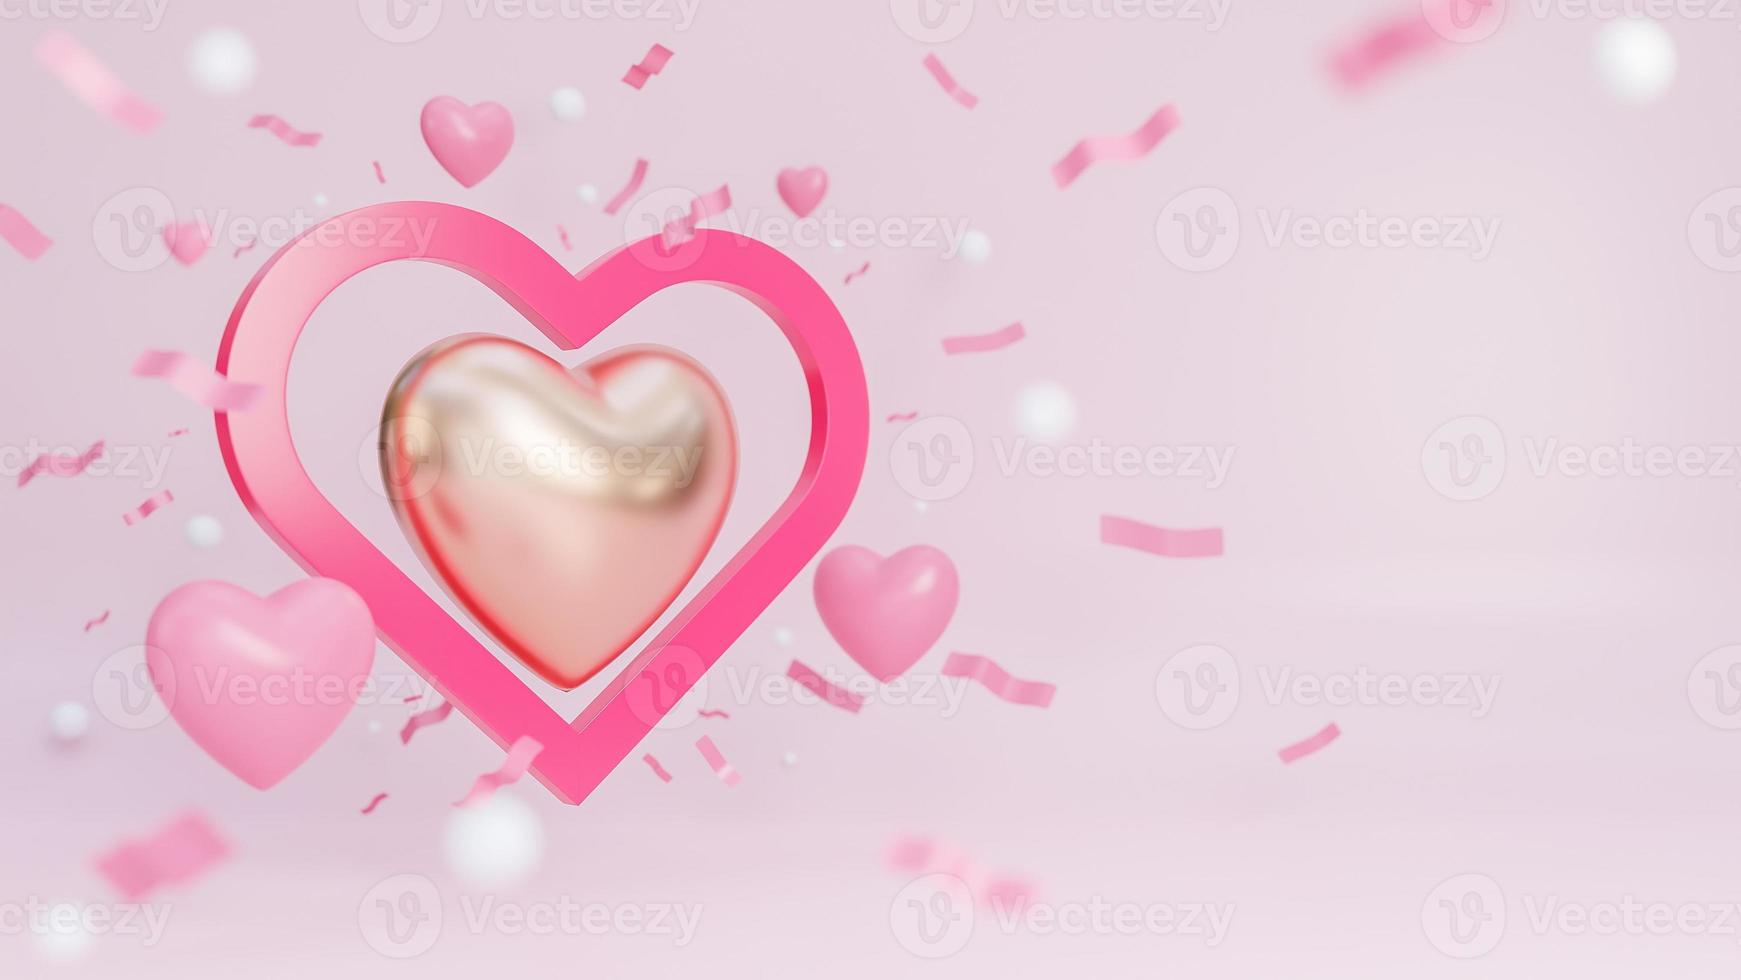 banner de feliz día de san valentín con muchos corazones y corazón dorado sobre fondo rosa., modelo 3d e ilustración. foto